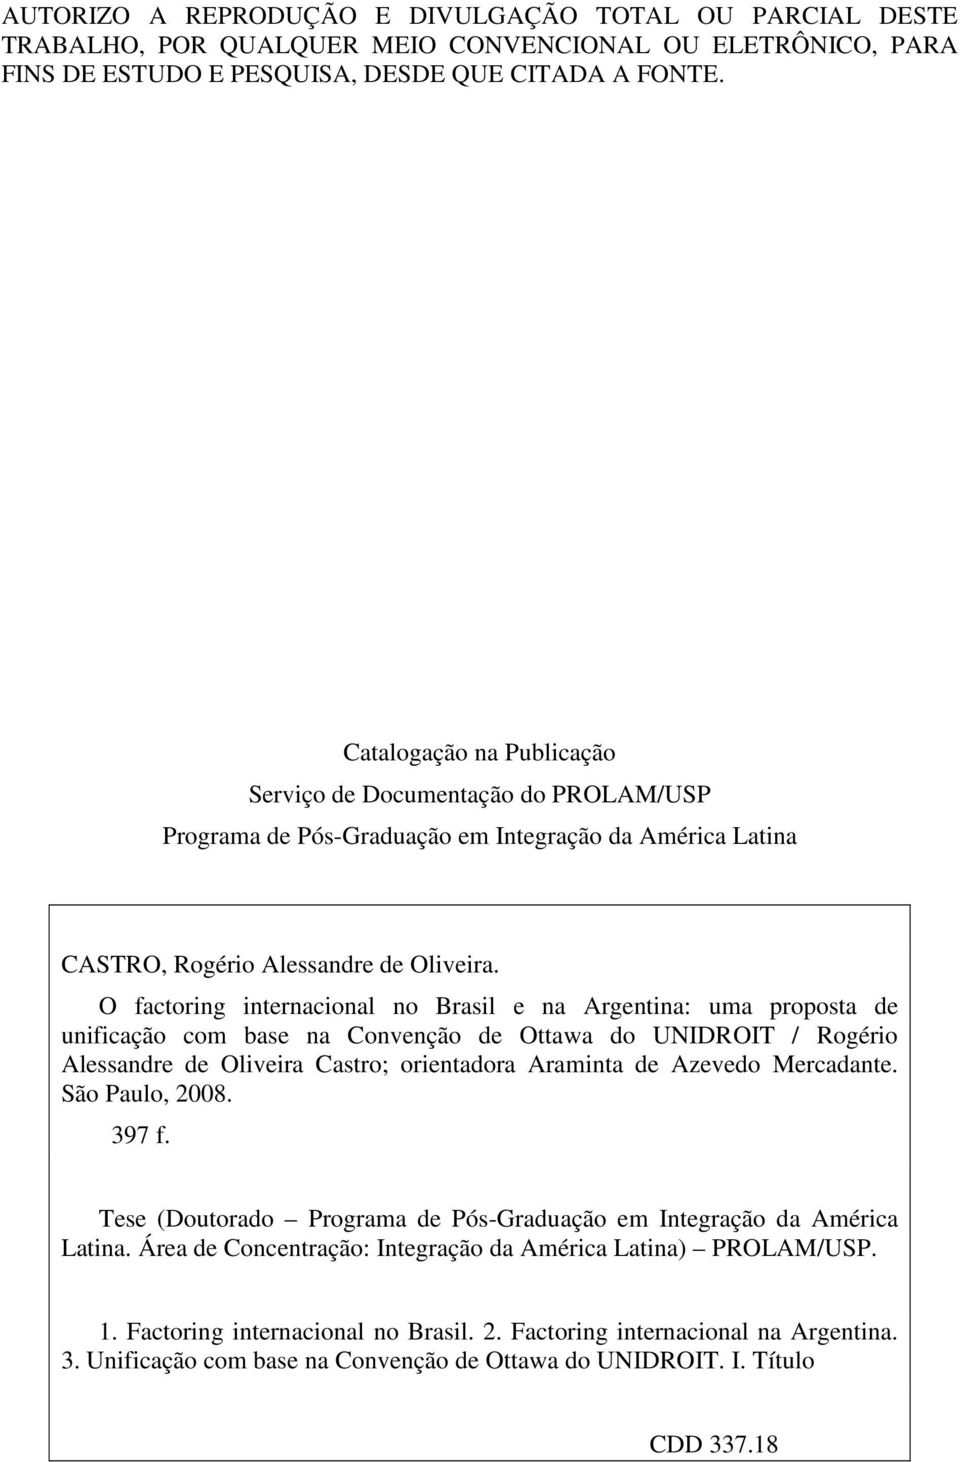 O factoring internacional no Brasil e na Argentina: uma proposta de unificação com base na Convenção de Ottawa do UNIDROIT / Rogério Alessandre de Oliveira Castro; orientadora Araminta de Azevedo